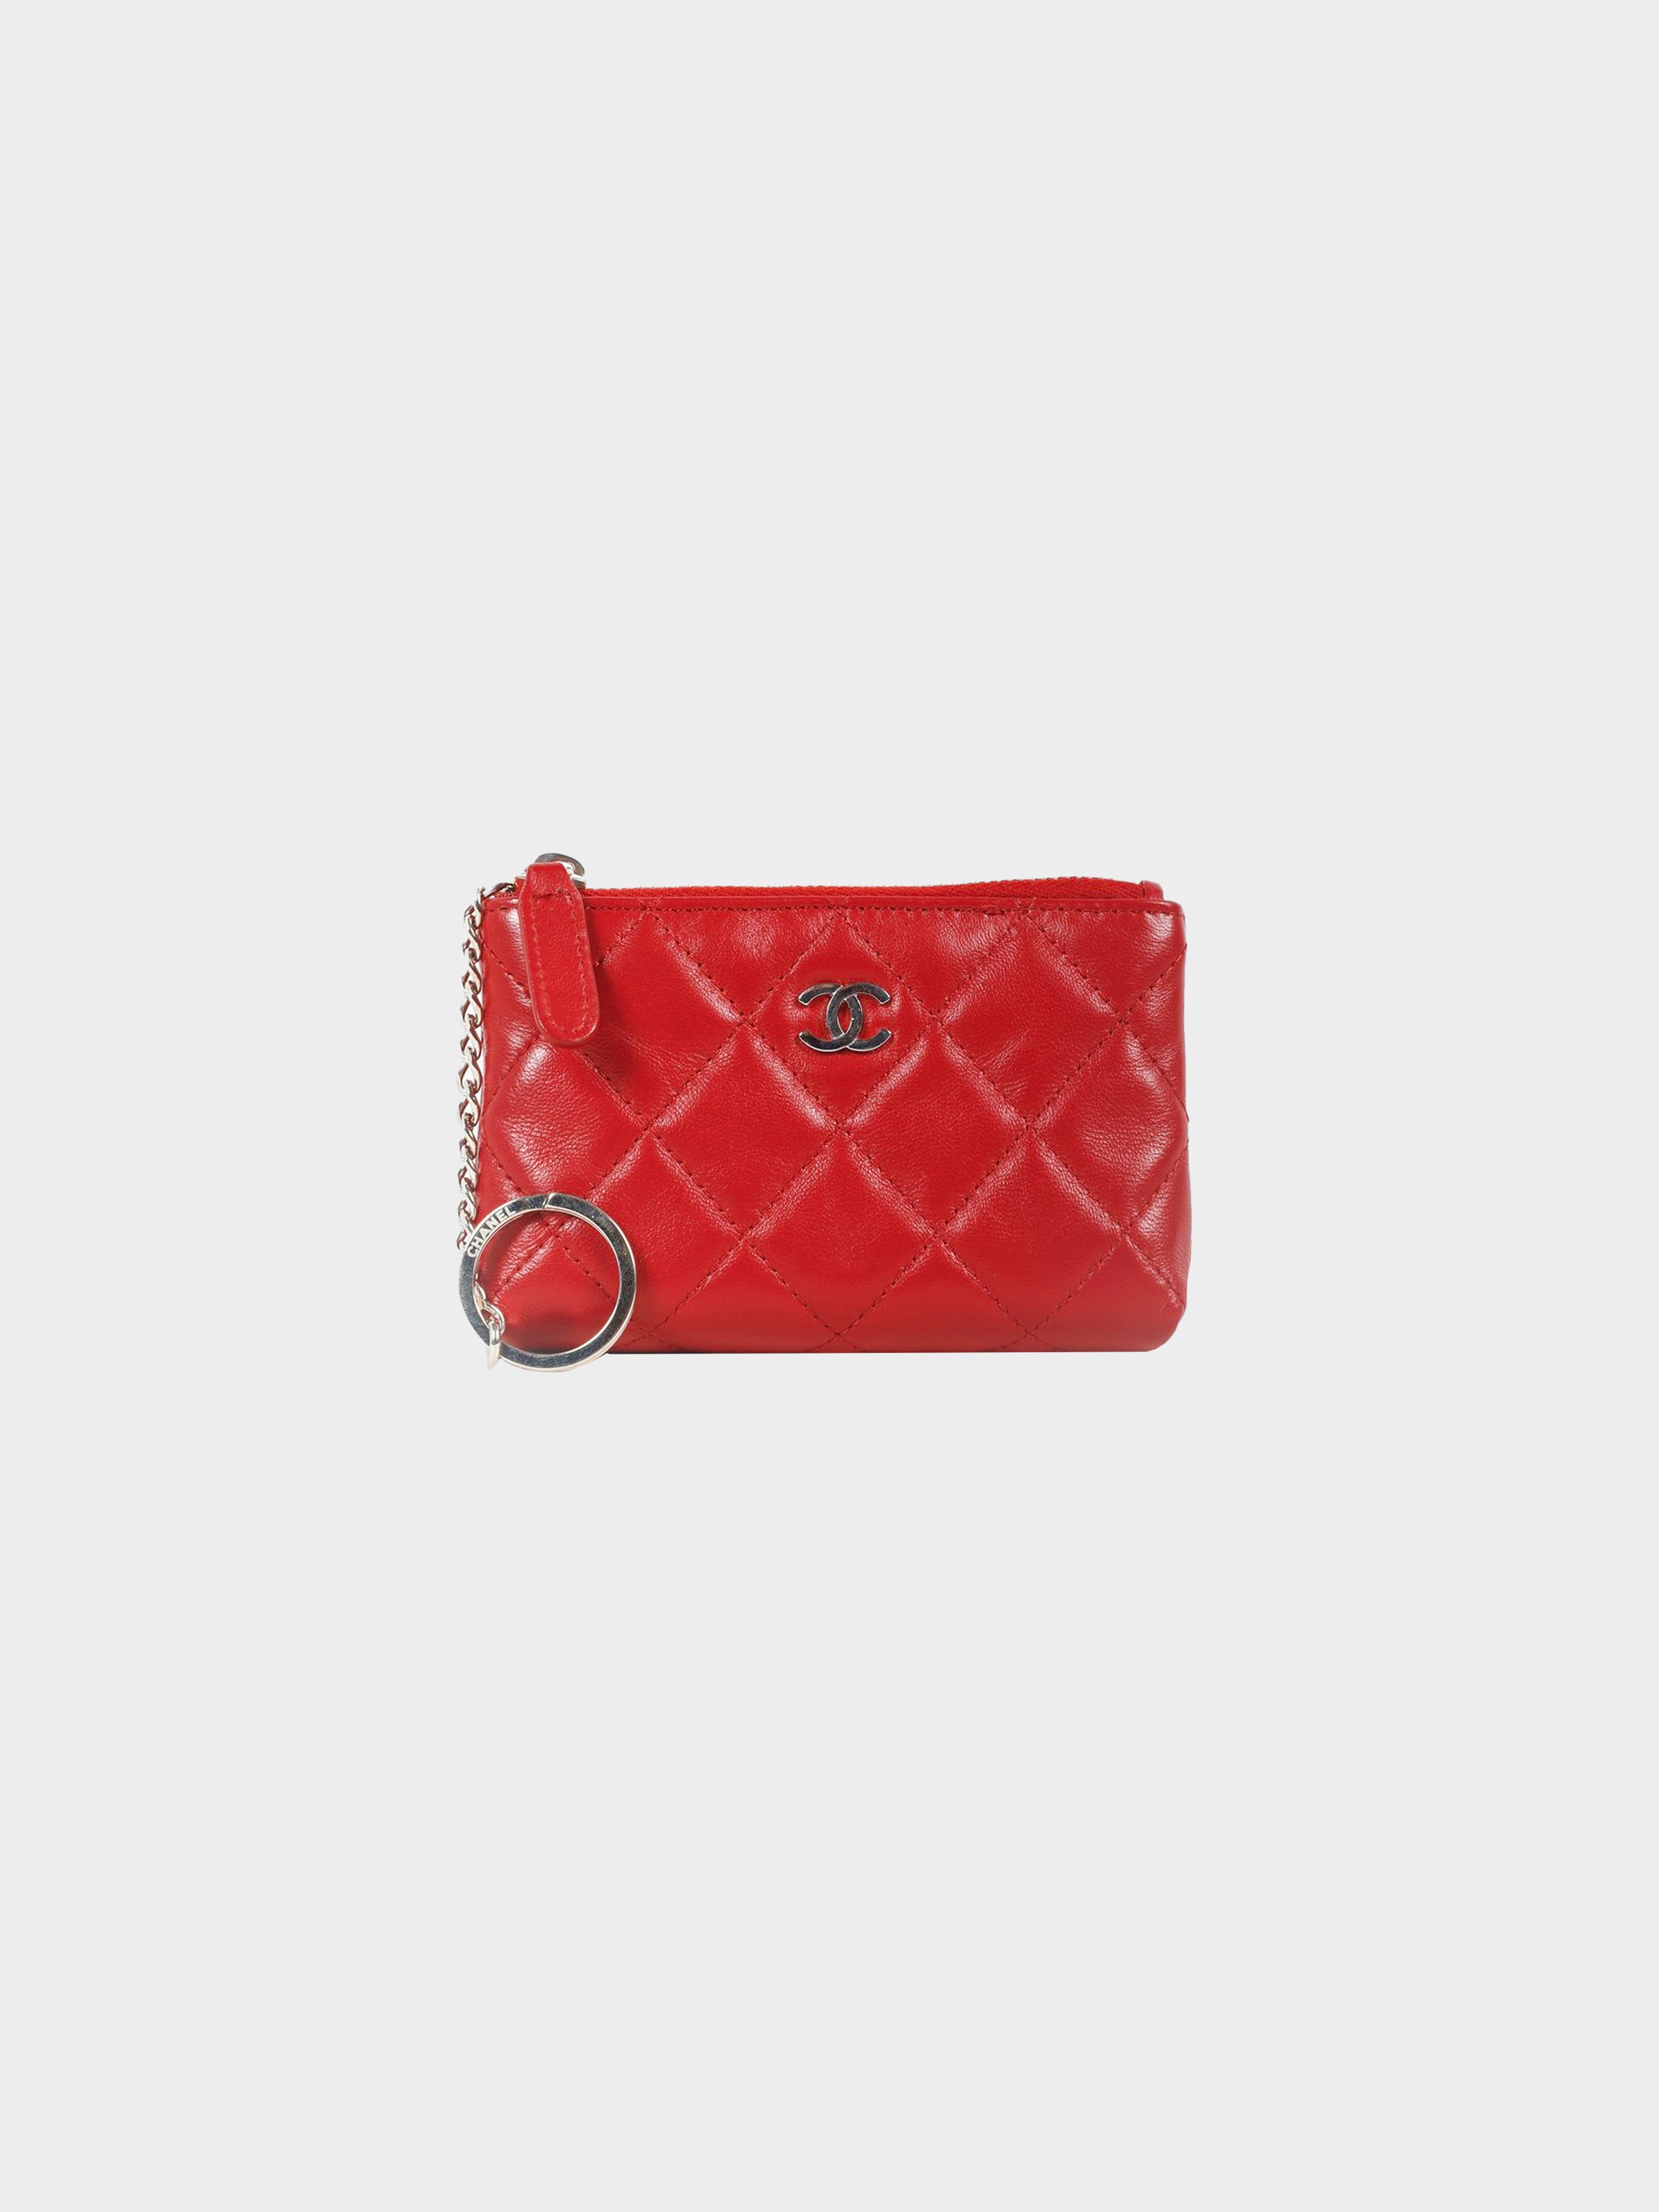 Chanel Lambskin Yen Wallet Red — DESIGNER TAKEAWAY BY QUEEN OF LUXURY  BOUTIQUE